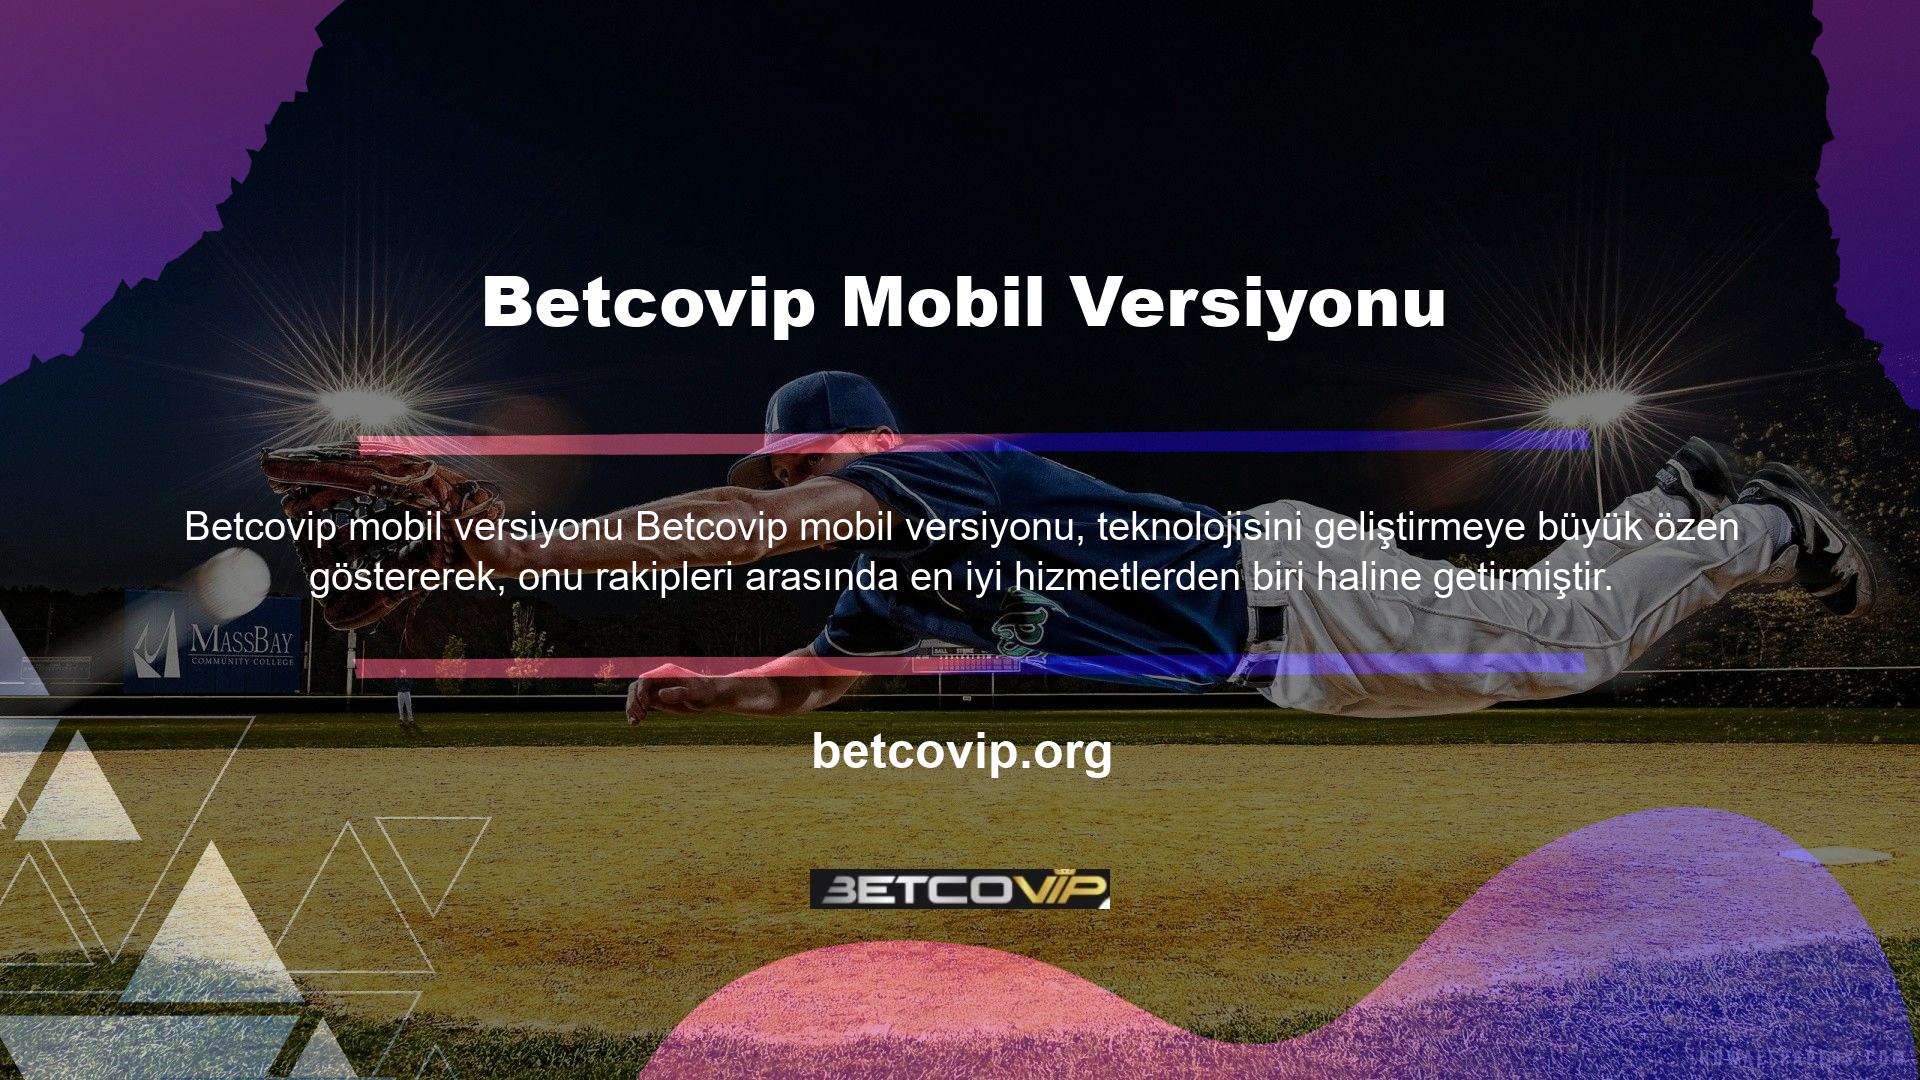 Betcovip web sitesi çok çeşitli spor dallarına yüksek oranlı bahisler sunmaktadır